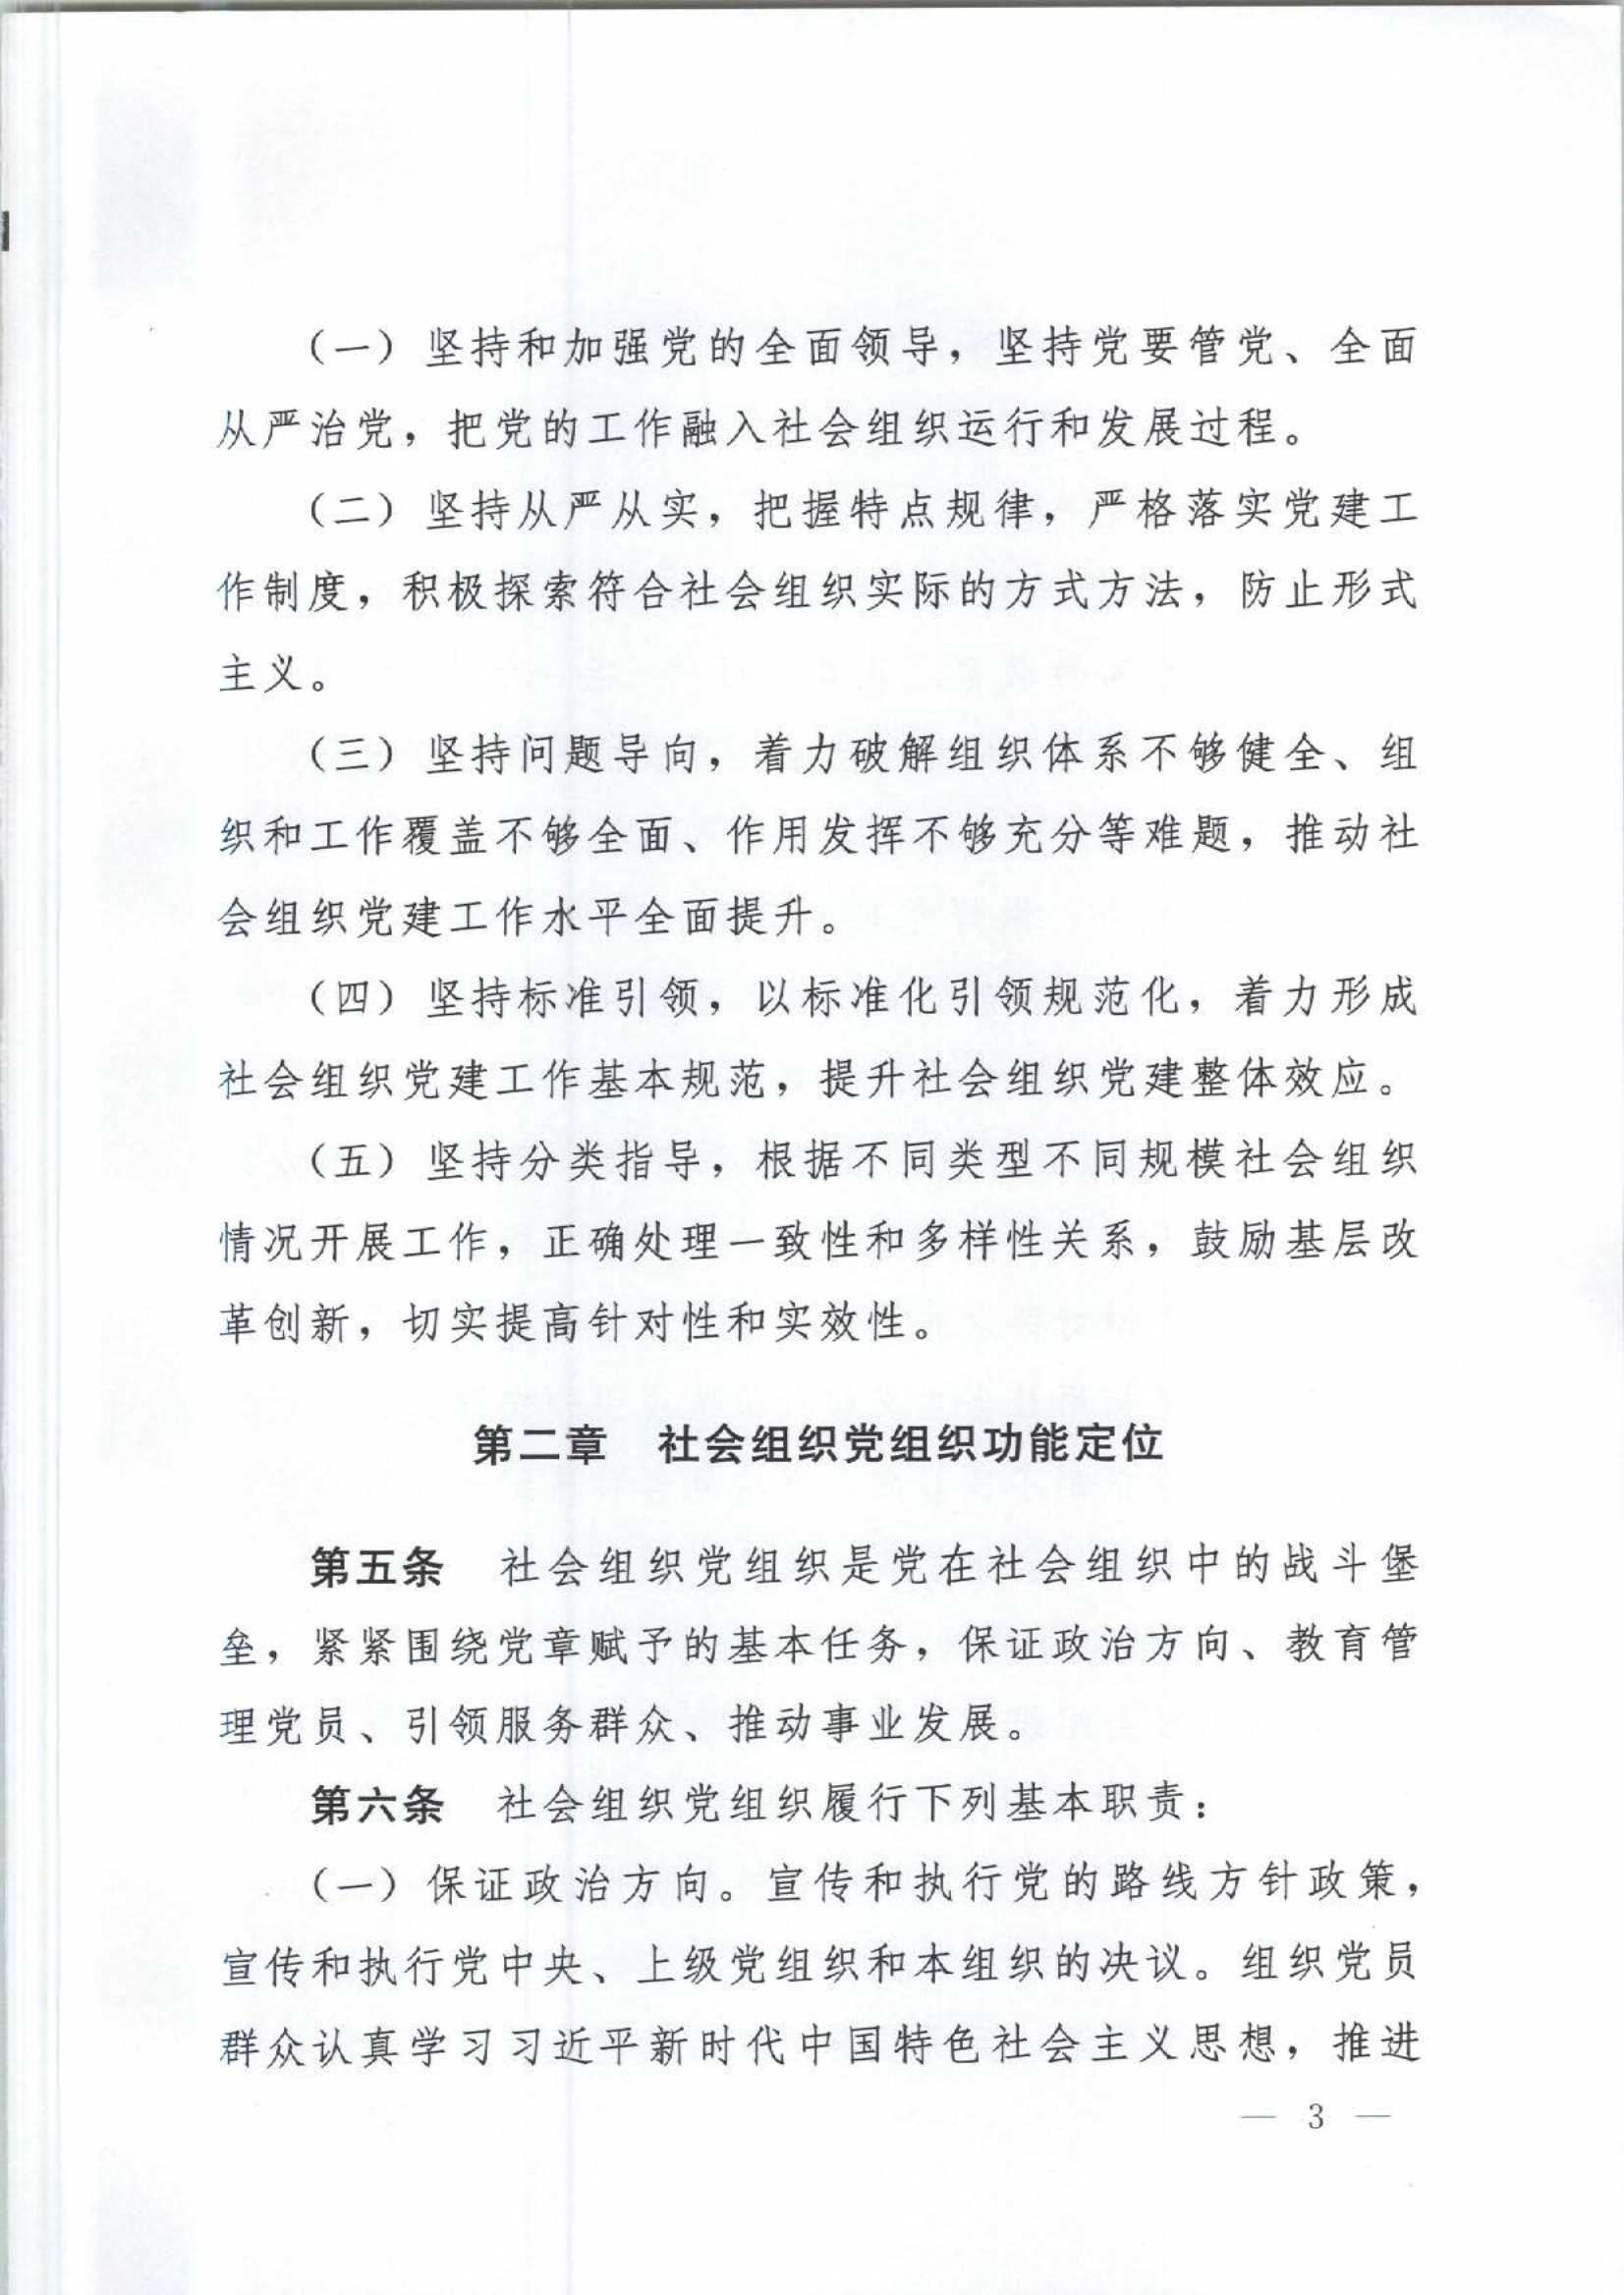 4.深圳市社会组织党的建设工作规定_3.Jpeg